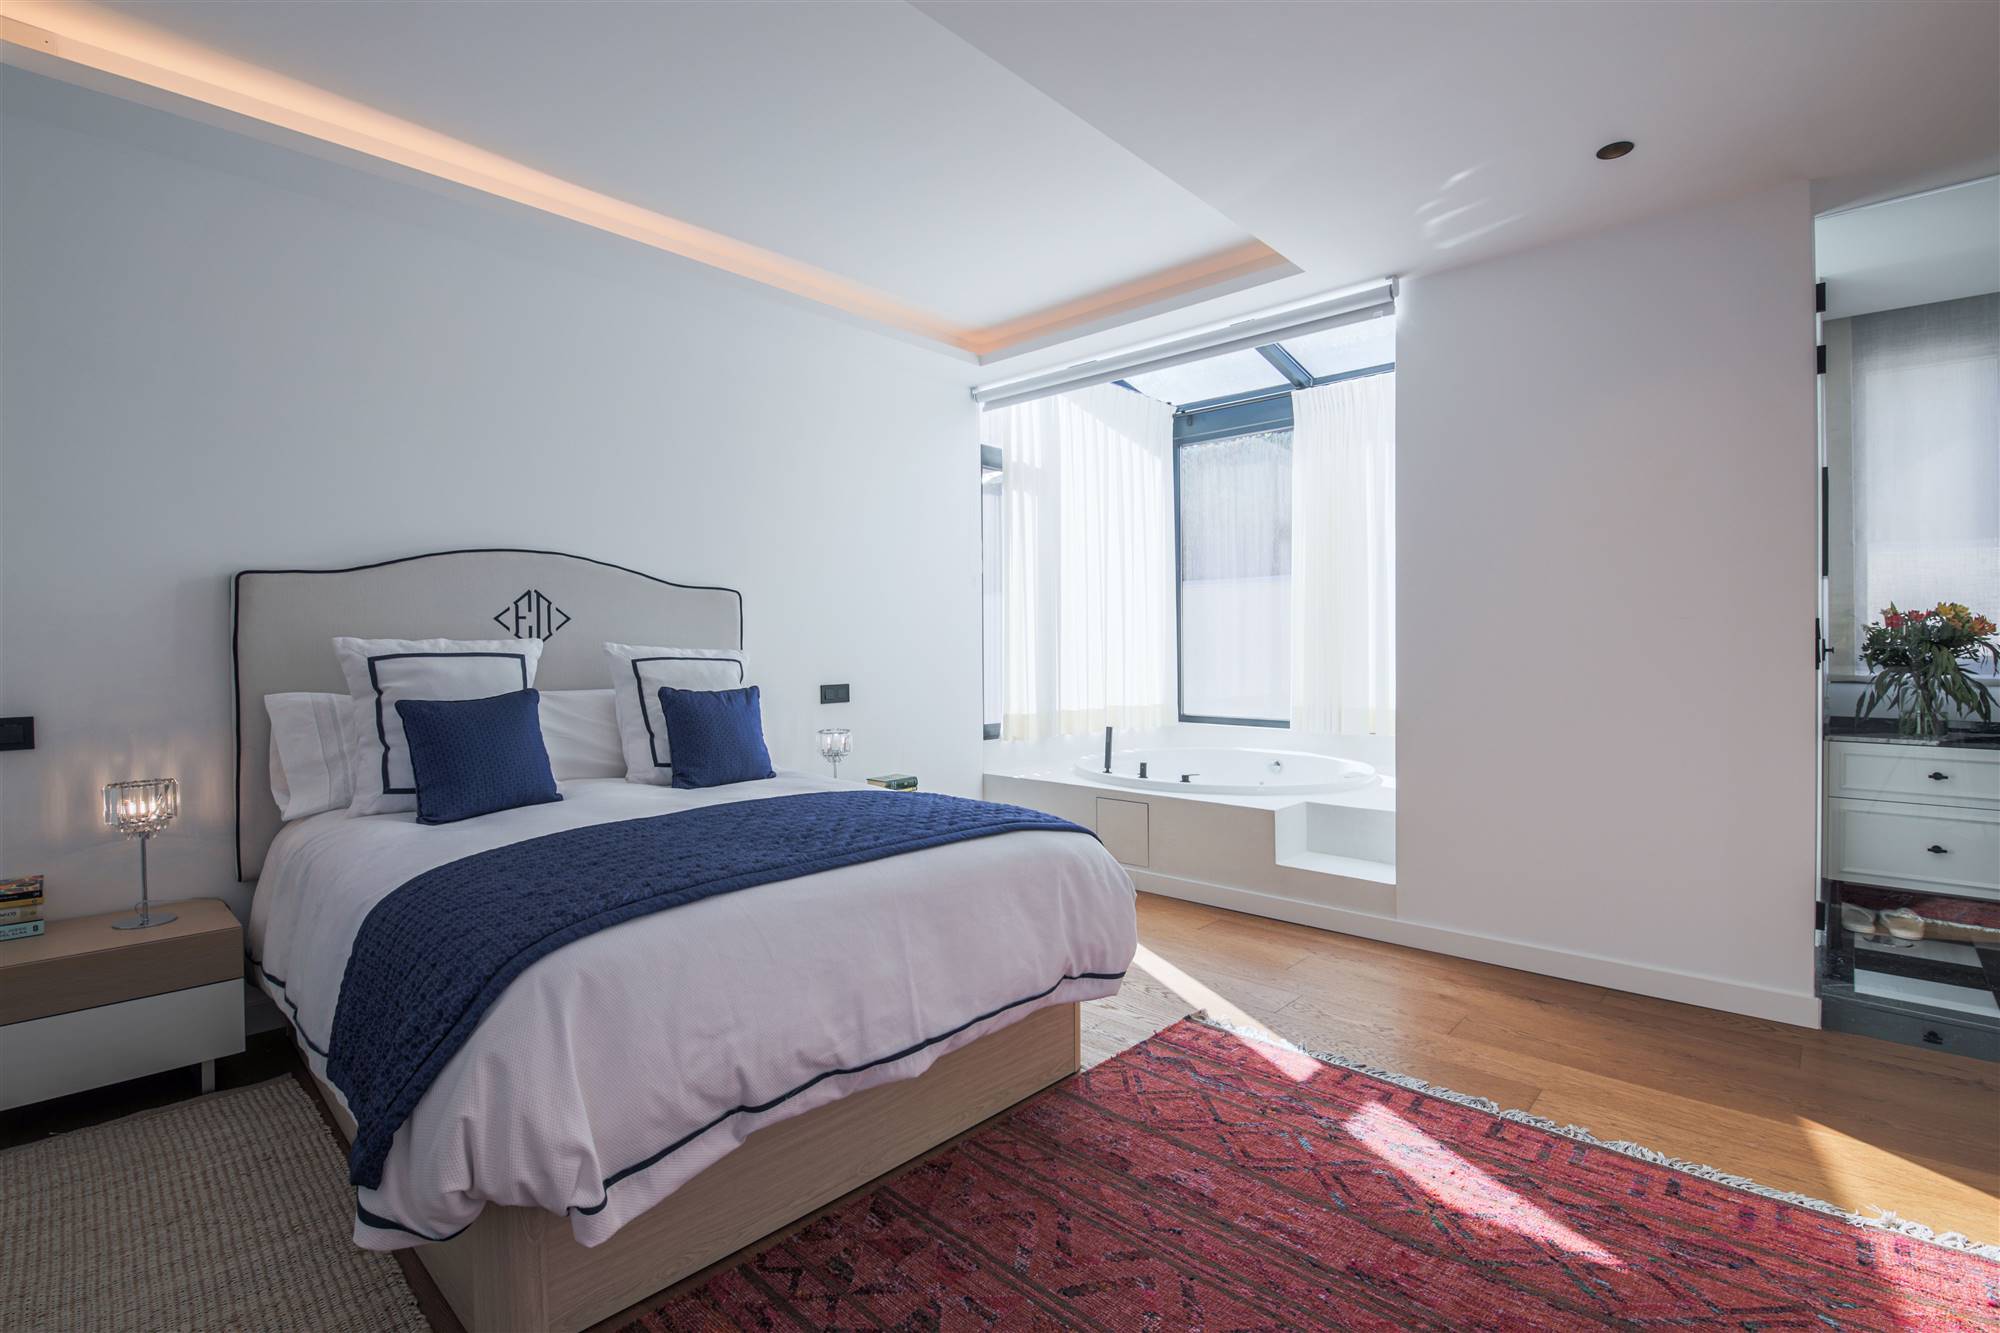 Dormitorio principal en suite de una vivienda unifamiliar en la calle Arturo Soria de Madrid, un proyecto del estudio de interiorismo WINK GROUP.